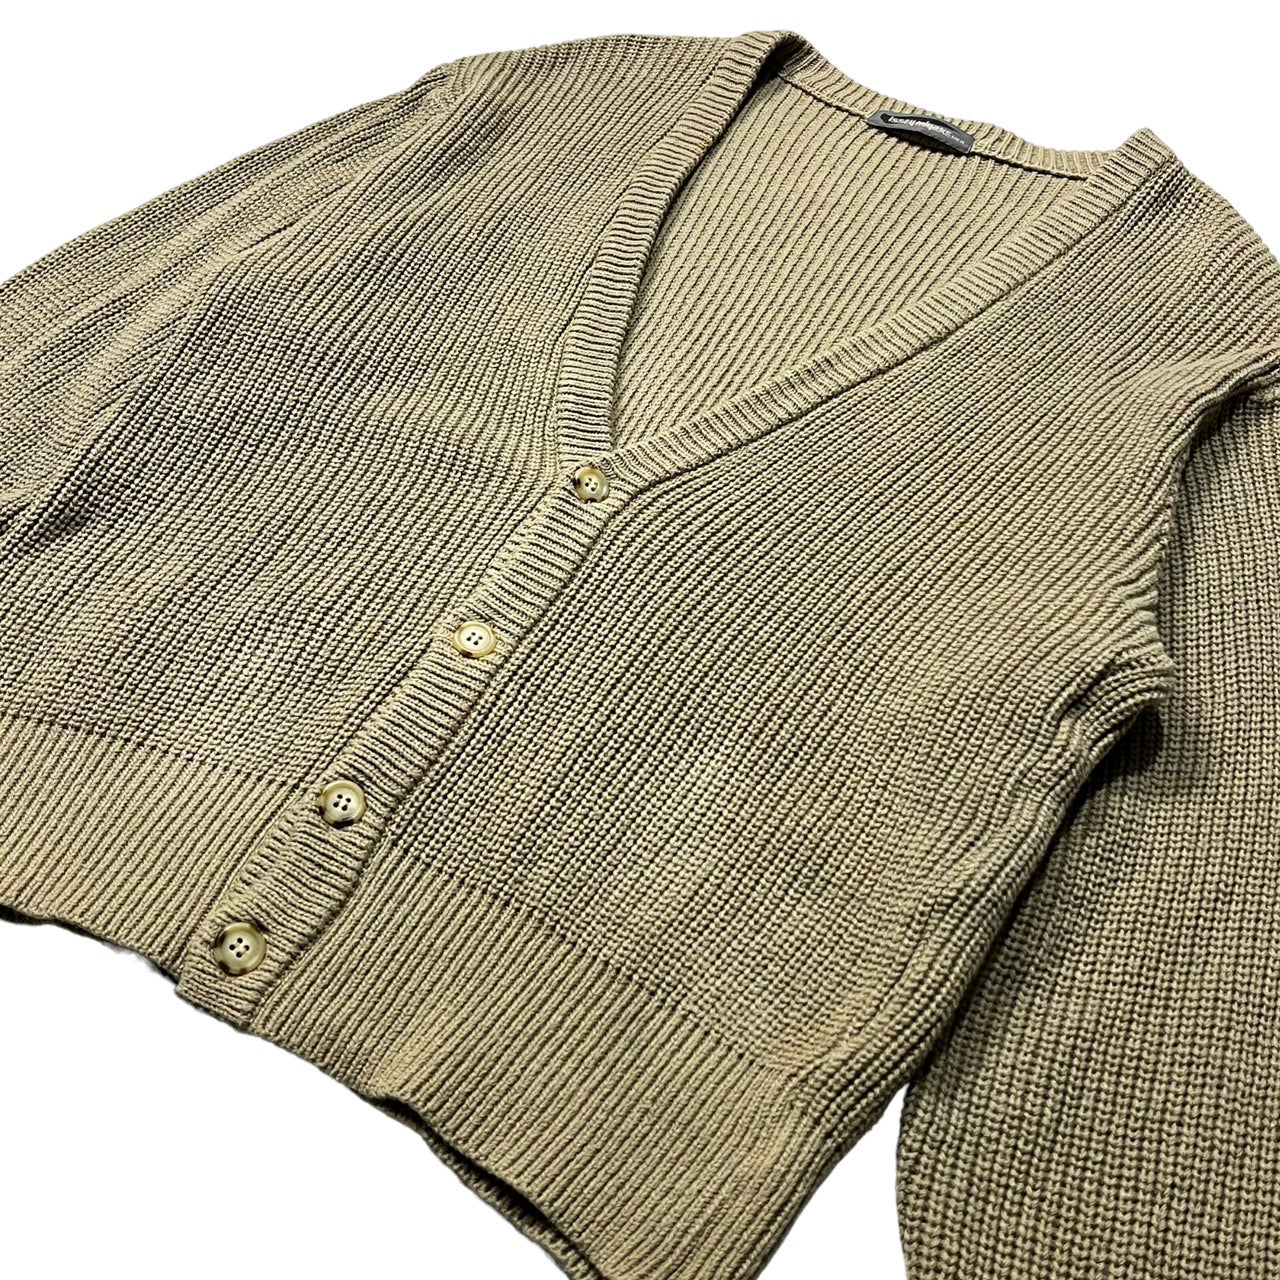 ISSEY MIYAKE MEN(イッセイミヤケメン) 80's cotton knit cardigan 